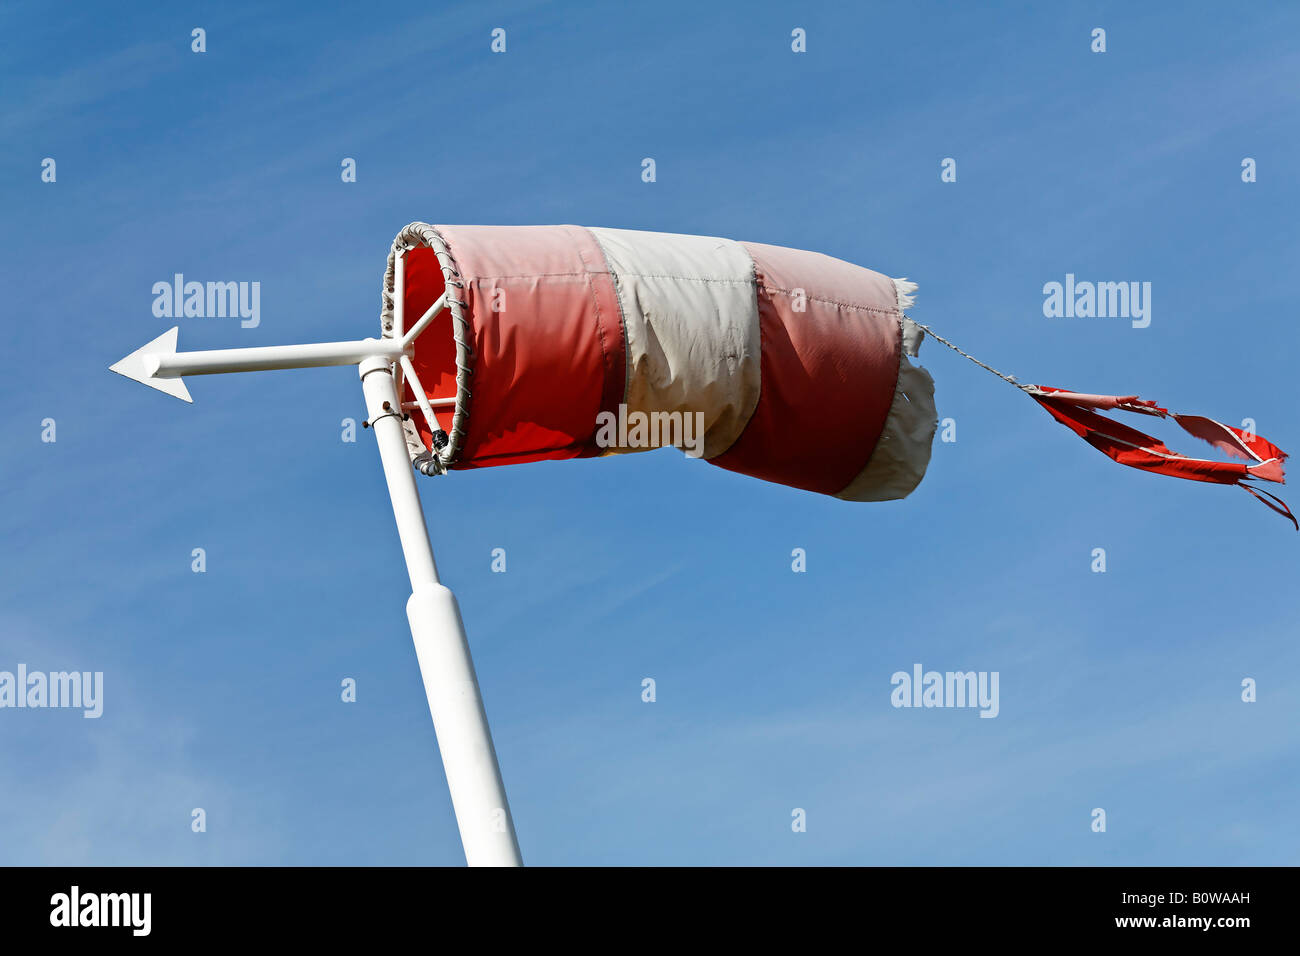 Shredded manica a vento e la freccia direzionale, vento forte Foto stock -  Alamy